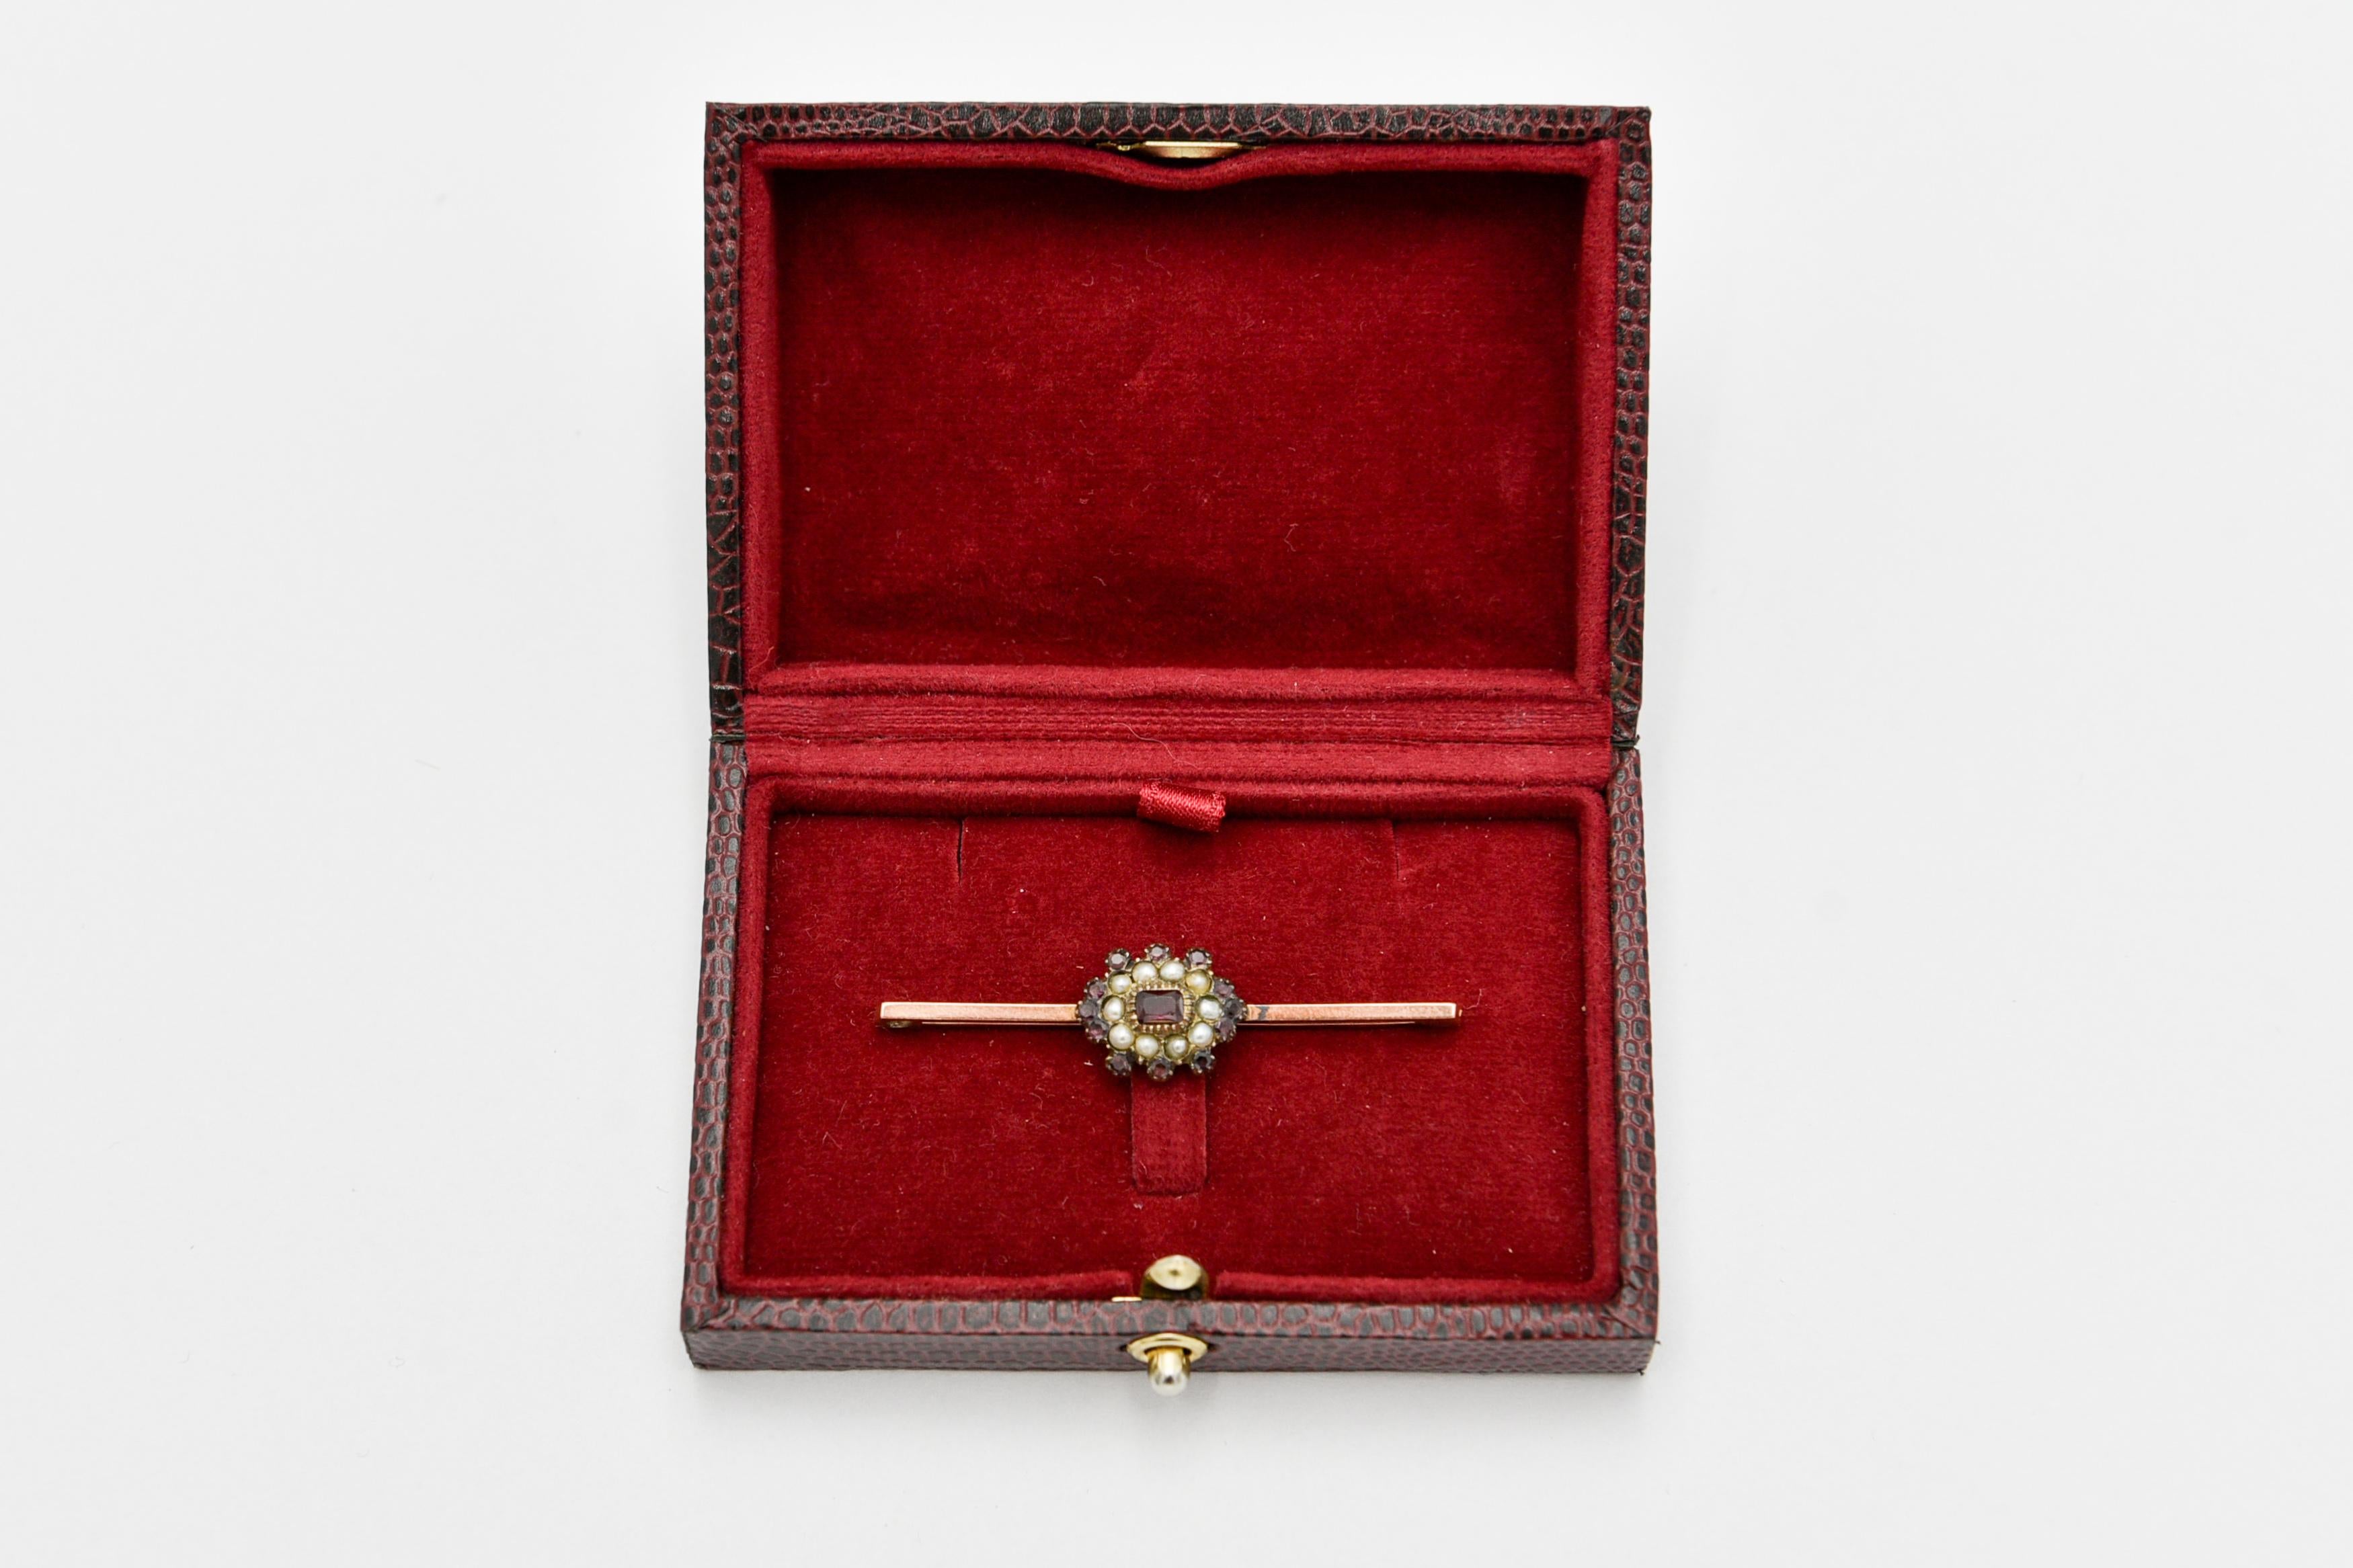 Old brooch with garnets and pearls

Origin : United Kingdom

Year: mid 19th century

width 5cm x 1cm